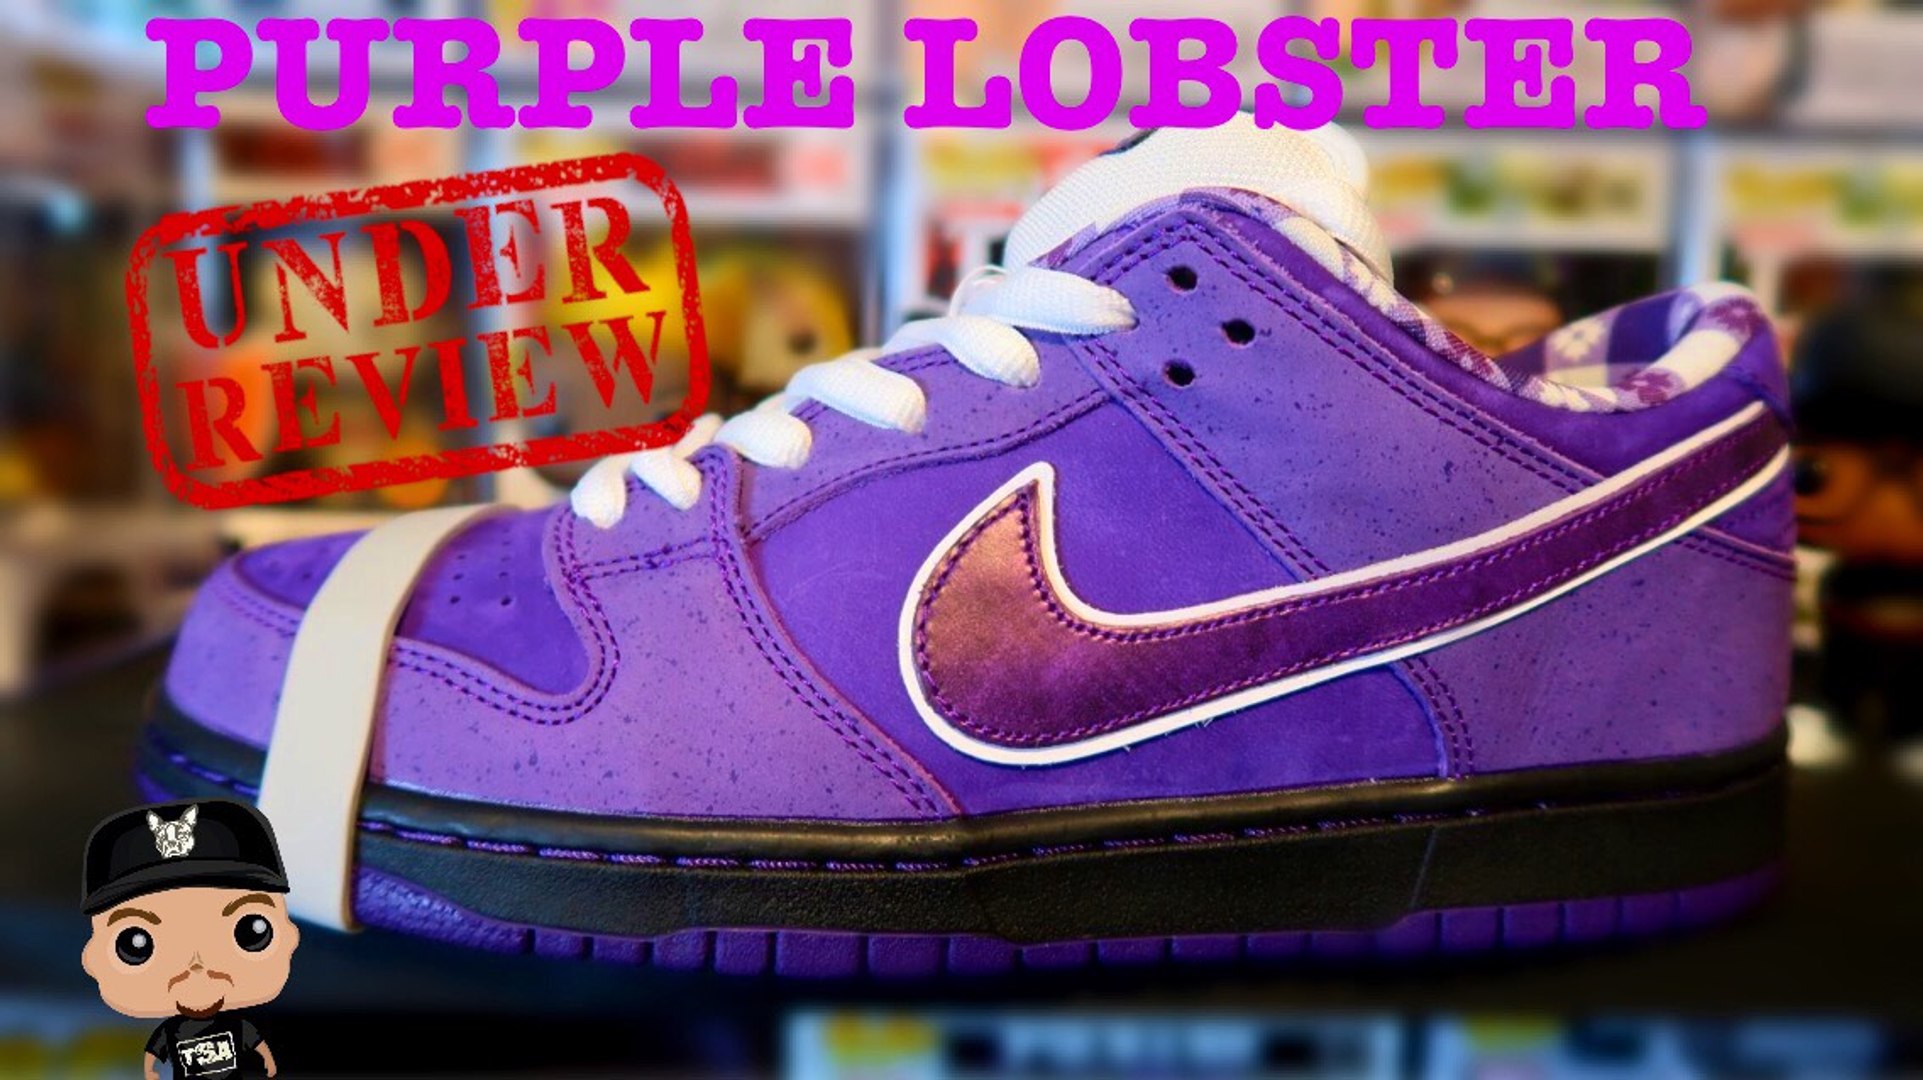 nike sb purple lobster on feet